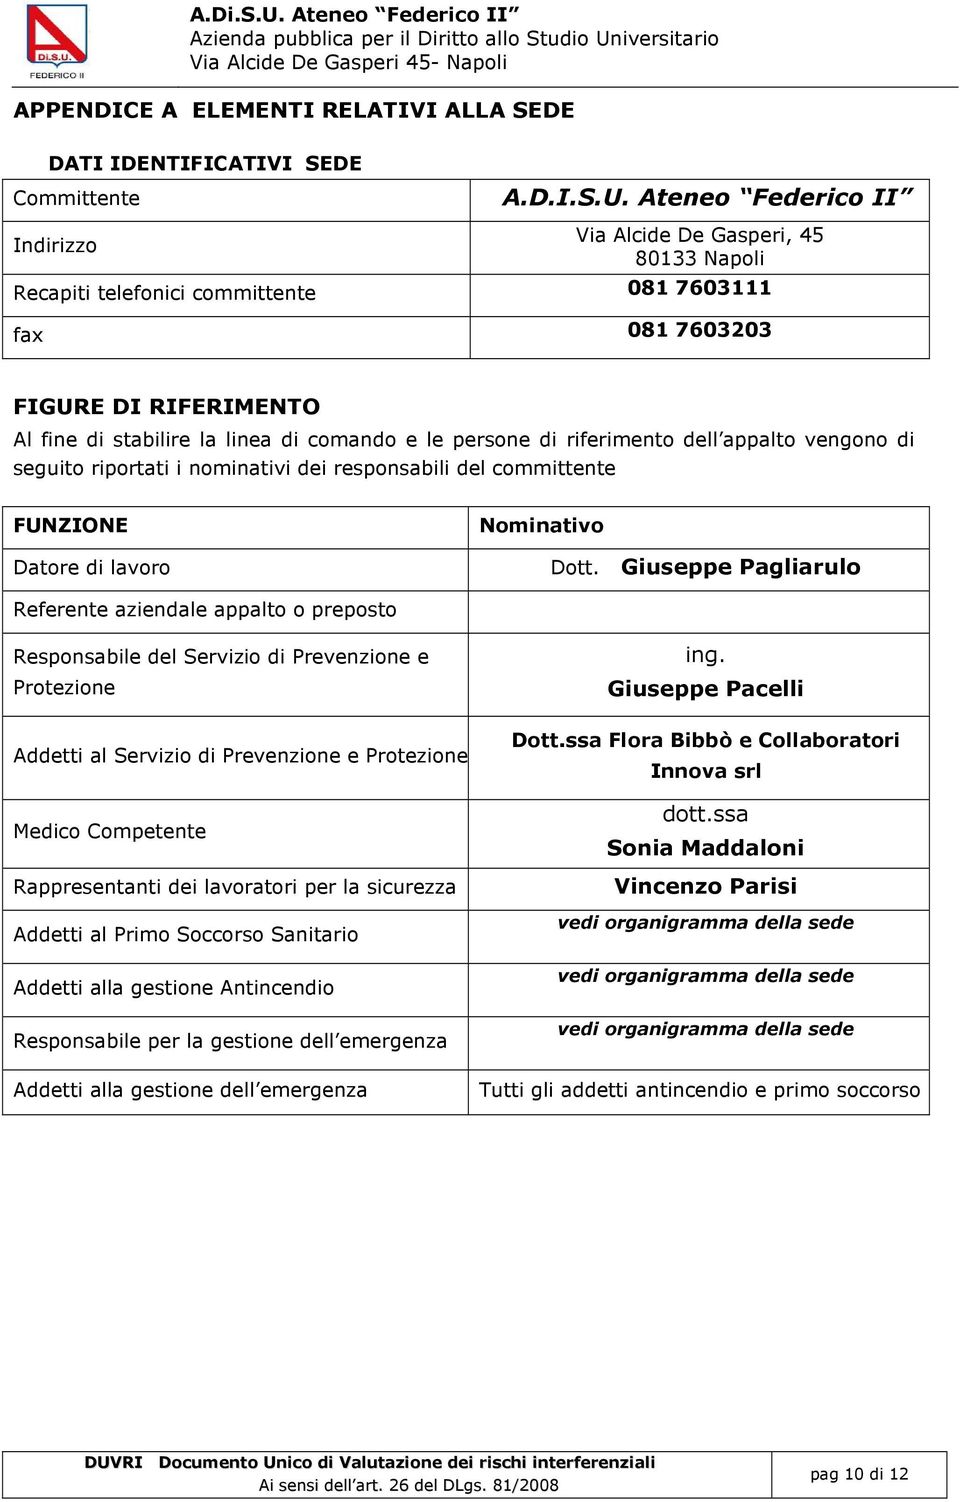 iversitario Via lcide De Gasperi 45- Napoli PPENDICE ELEENTI RELTIVI LL SEDE DTI IDENTIFICTIVI SEDE Committente.D.I.S.U.